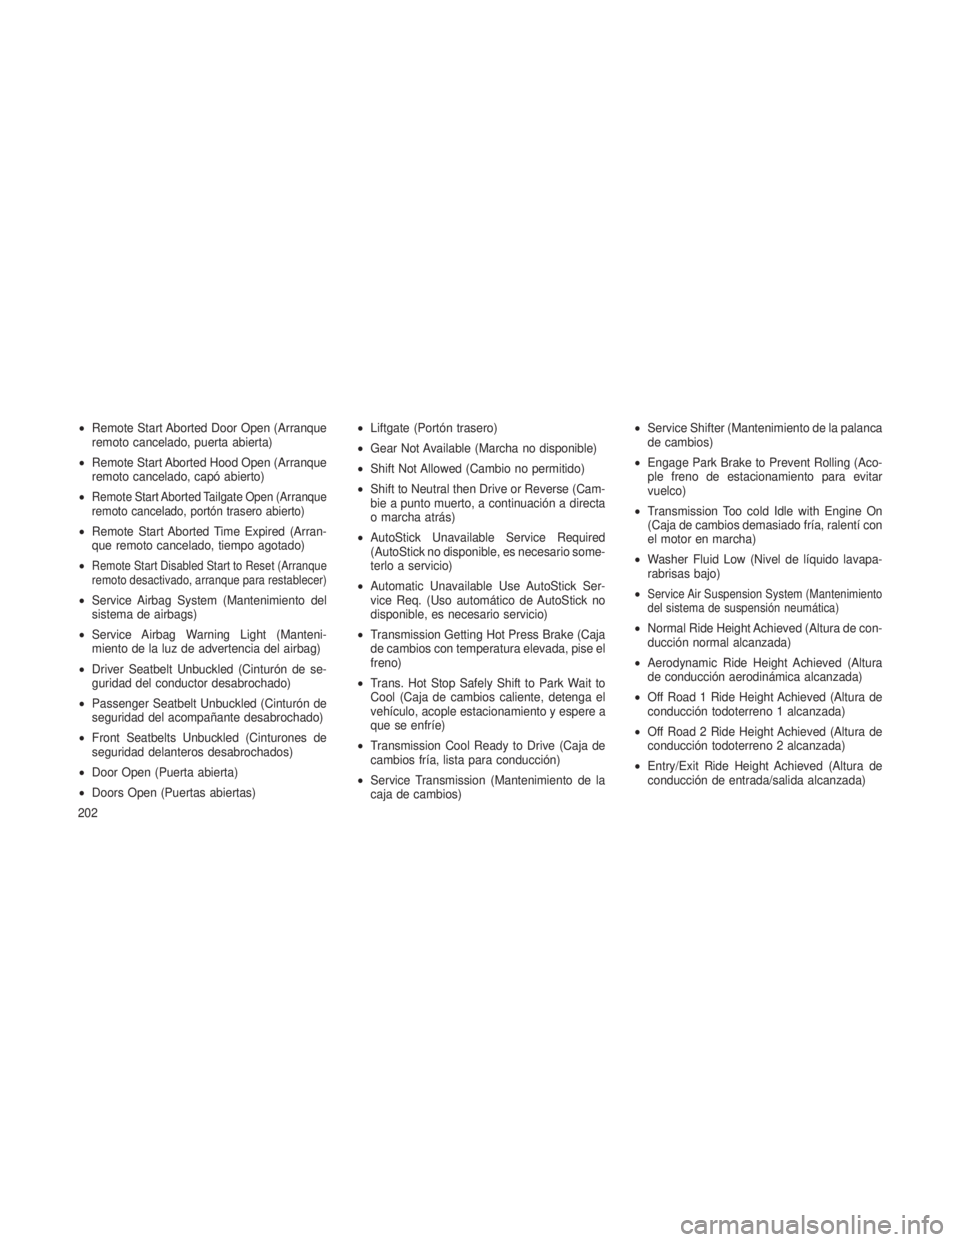 JEEP GRAND CHEROKEE 2013  Manual de Empleo y Cuidado (in Spanish) •Remote Start Aborted Door Open (Arranque
remoto cancelado, puerta abierta)
• Remote Start Aborted Hood Open (Arranque
remoto cancelado, capó abierto)
•
Remote Start Aborted Tailgate Open (Arra